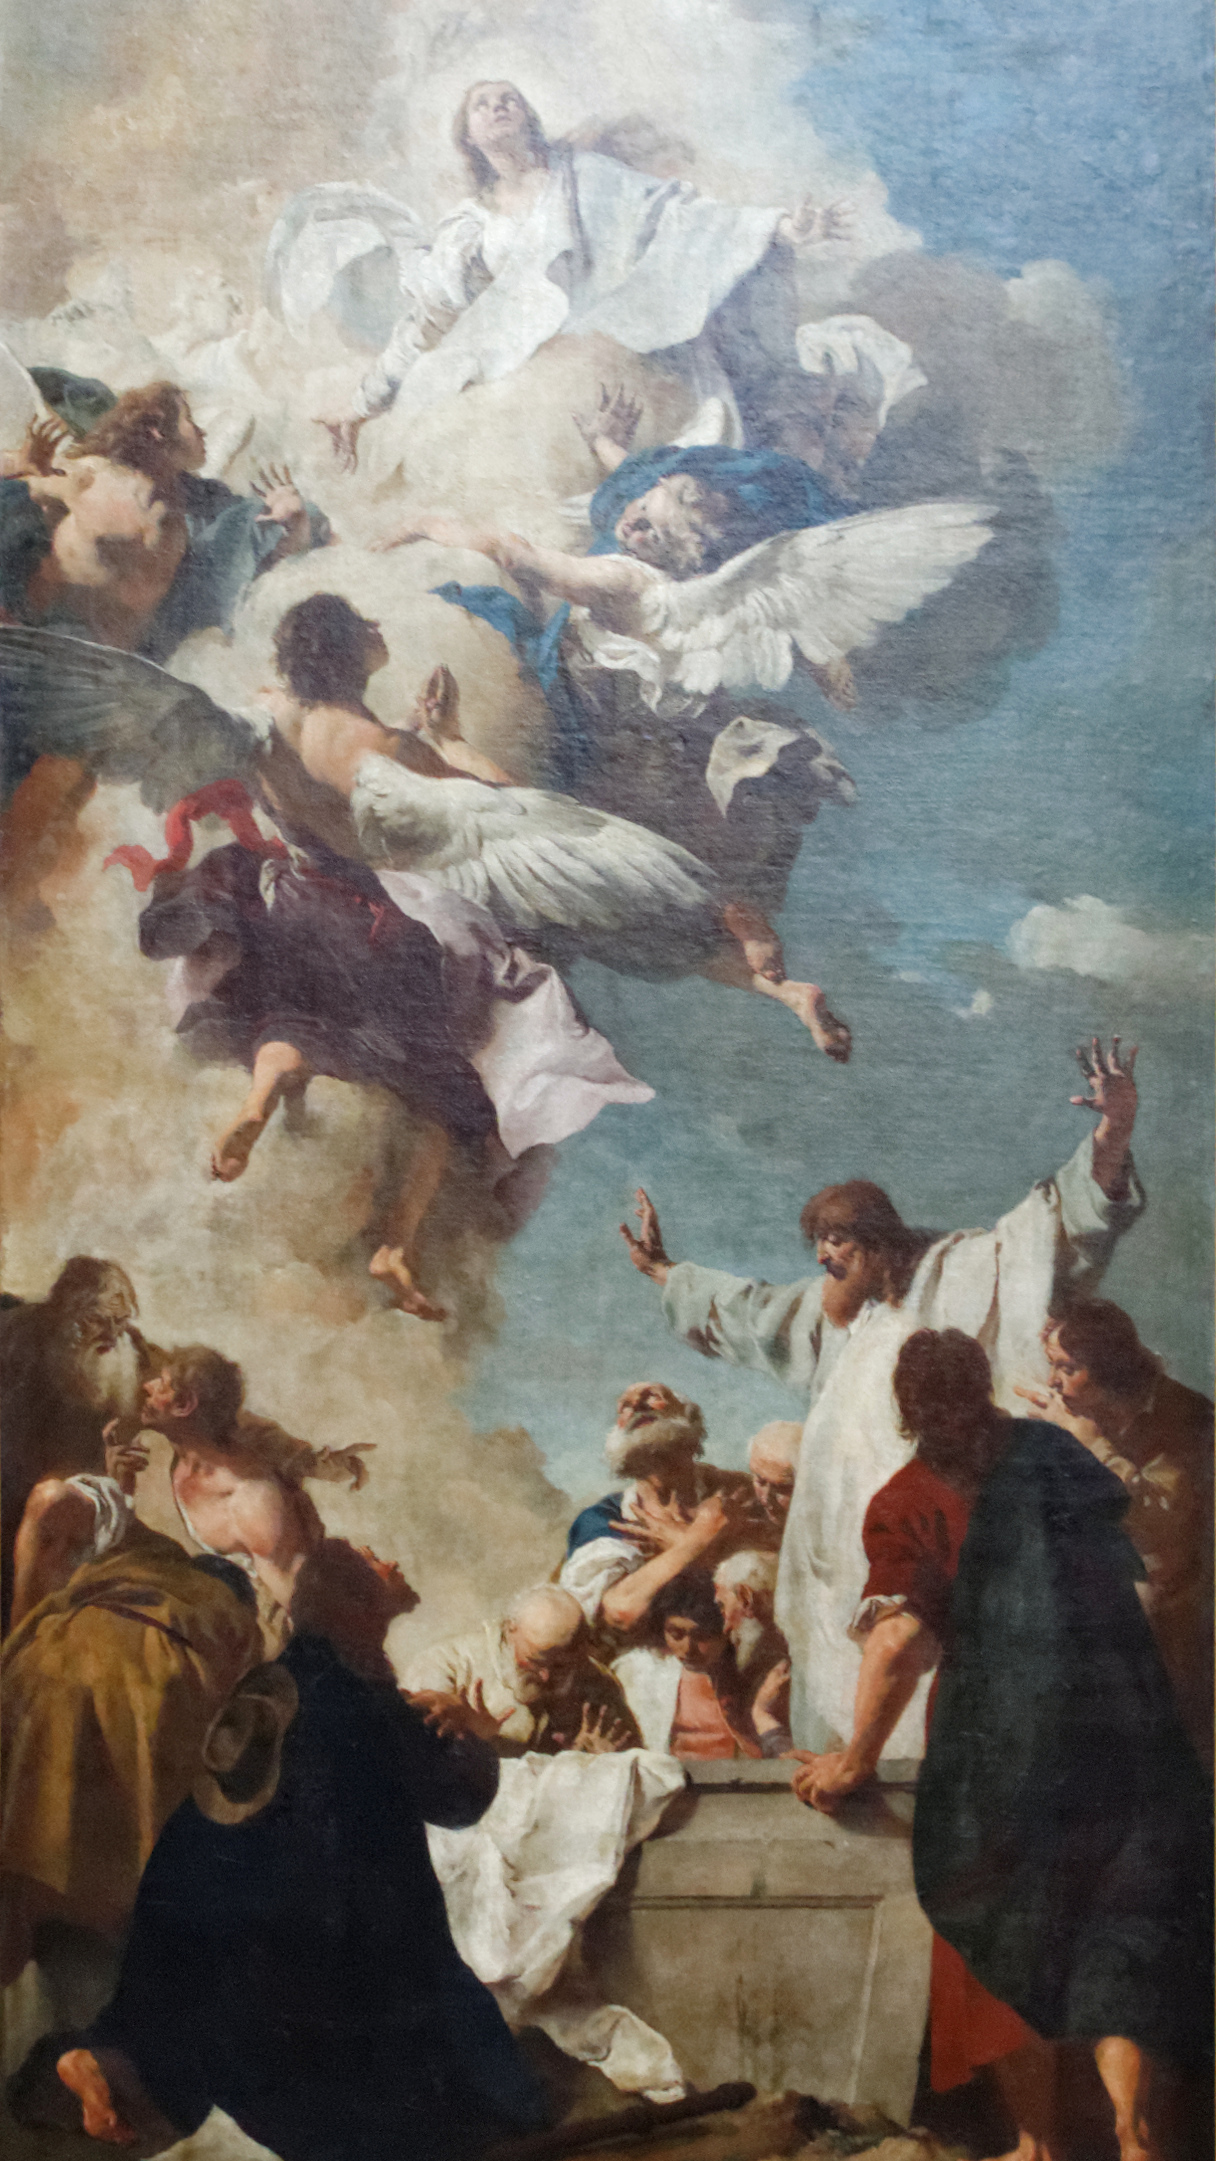 Das Bild zeigt in gemalter Version den Vorgang von Marias Himmelfahrt.